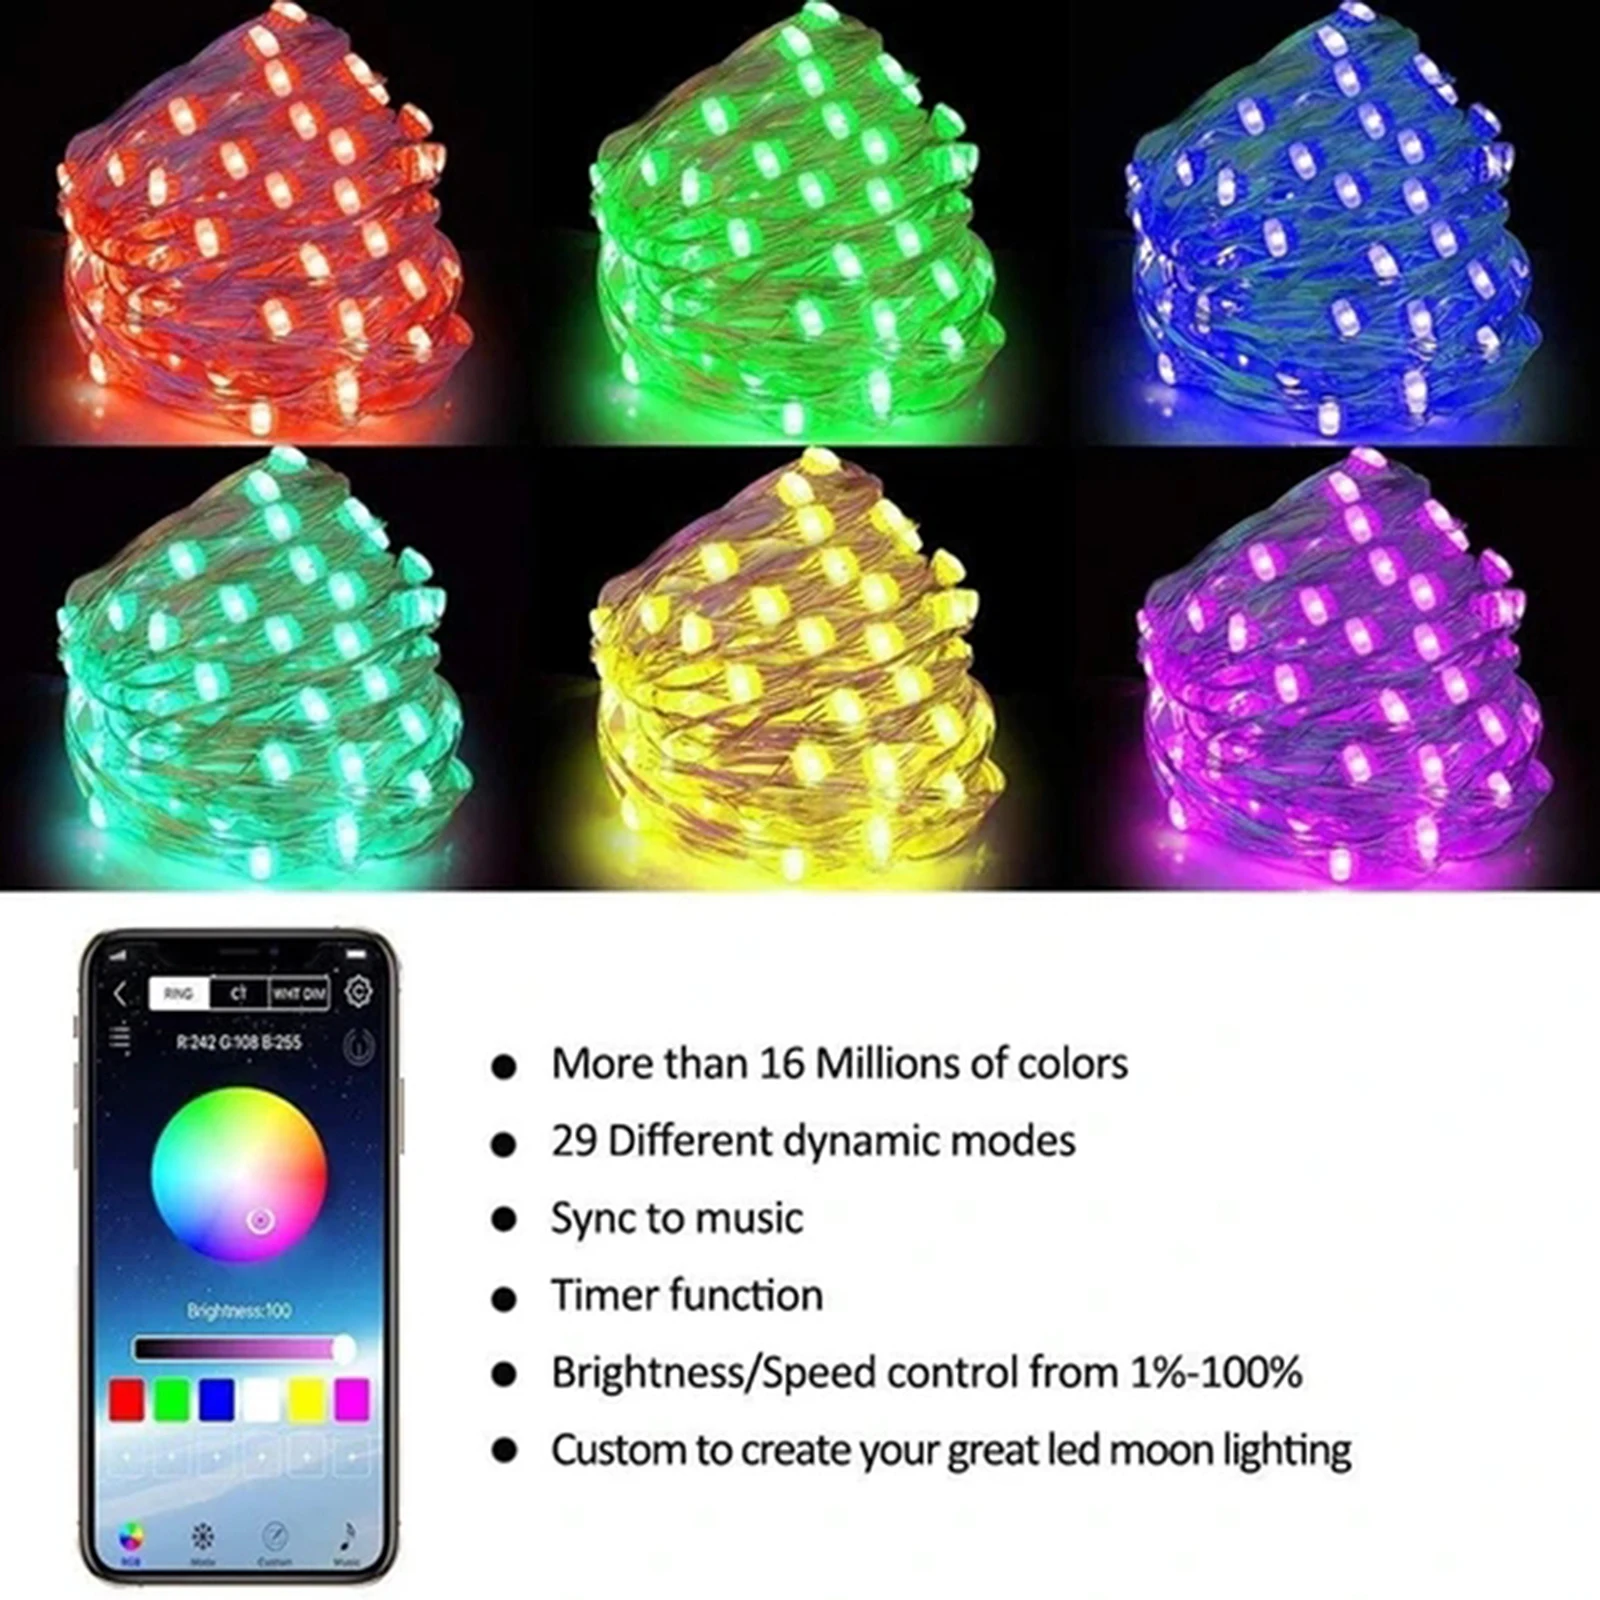 Usb Led String Lys Bluetooth-App Control Smart Garland Twinkly Nye År Jul Hus Værelse Dekoration Udendørs Fairy Lights 4